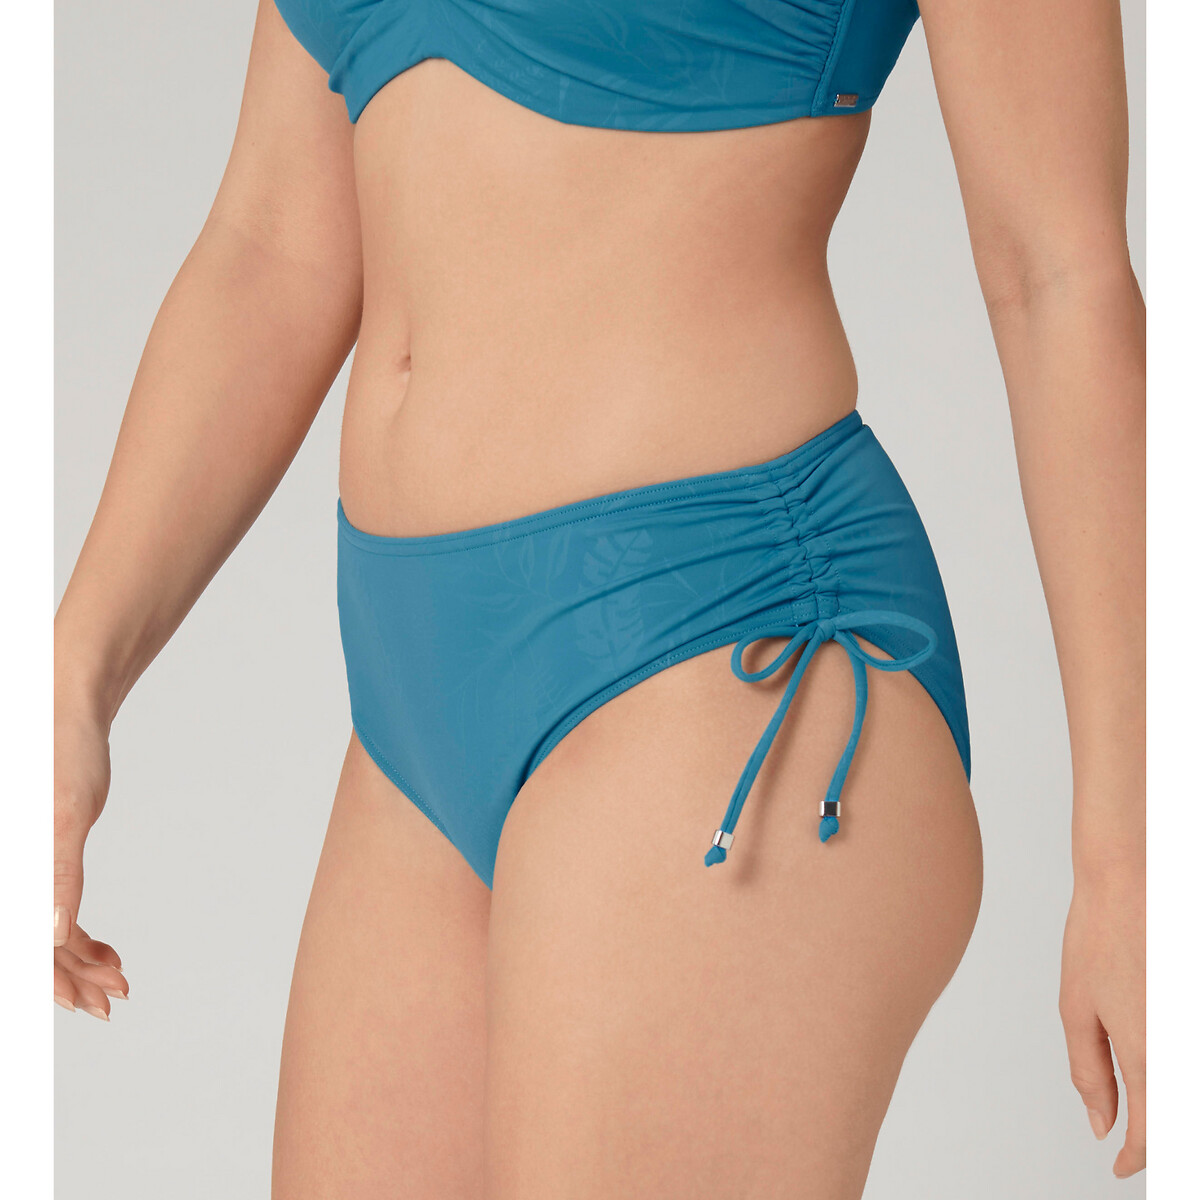 Nouveau Turquoise Nervuré Design Femme Maillots de bain Slips/Pantalon Avec Côté Liens TU Taille 20 